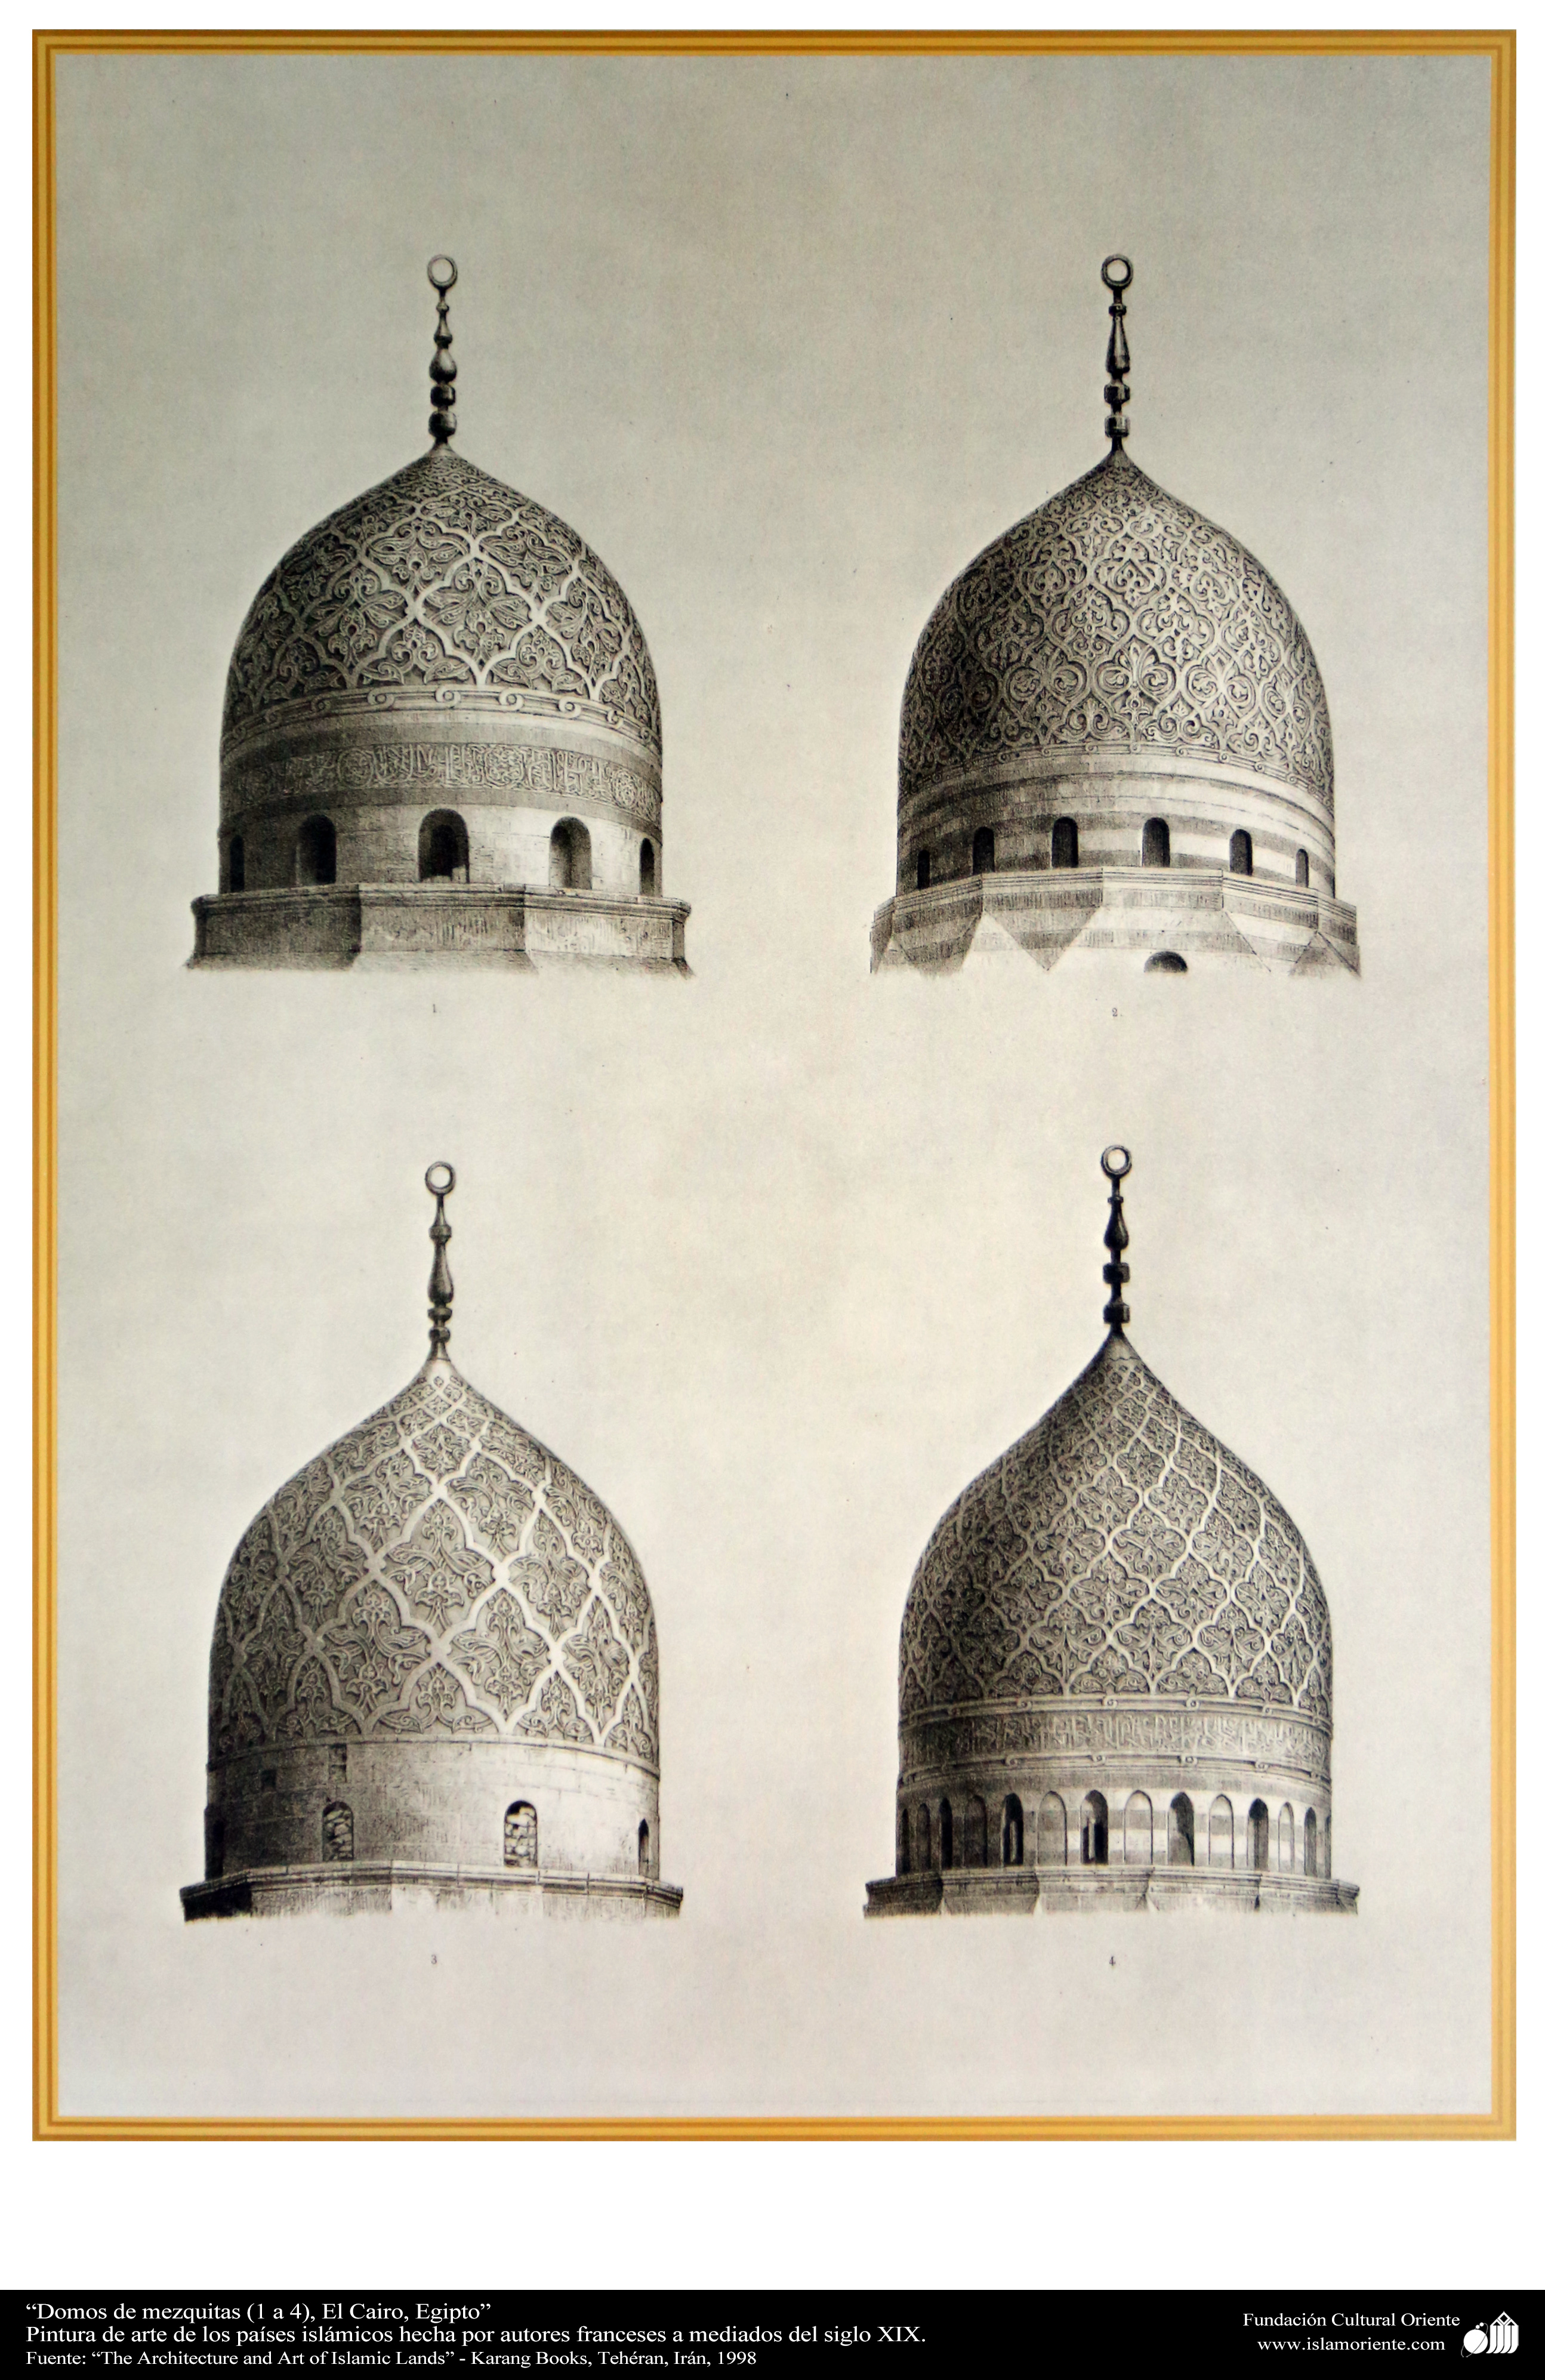 استخدم المسلمين زخرفة التماثل الكلي في تزيين جدران المساجد و القباب و المآذن